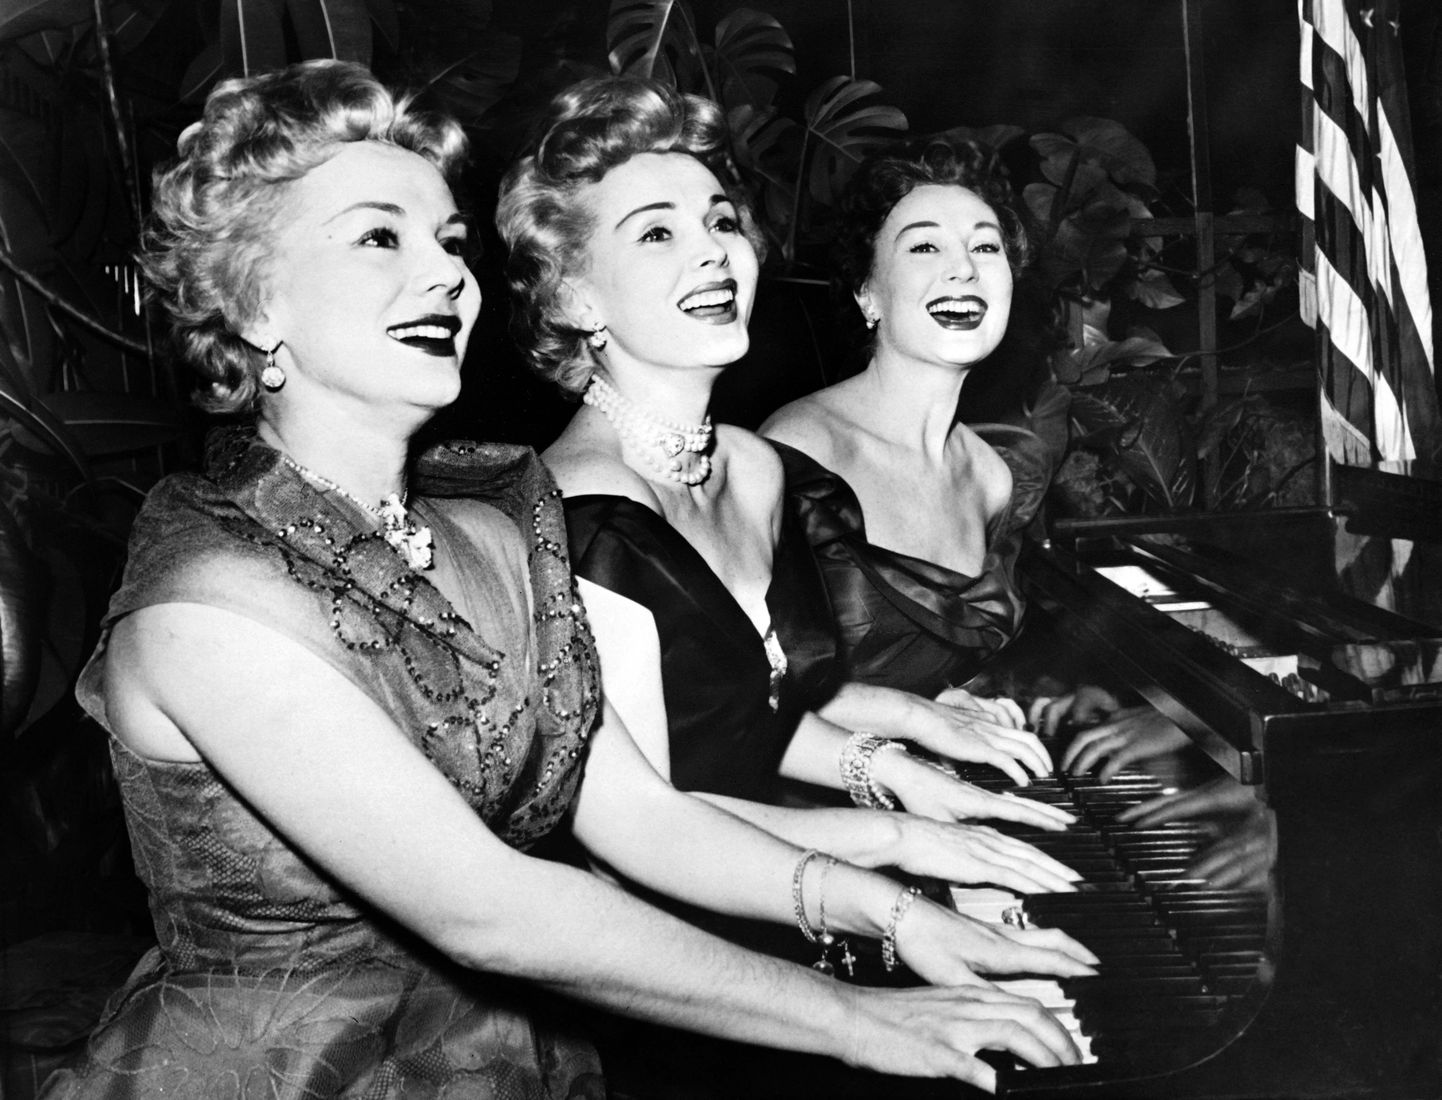 Aastal 1954 tehtud fotol on Zsa Zsa Gabor ning tema õed Eva ja Magda.